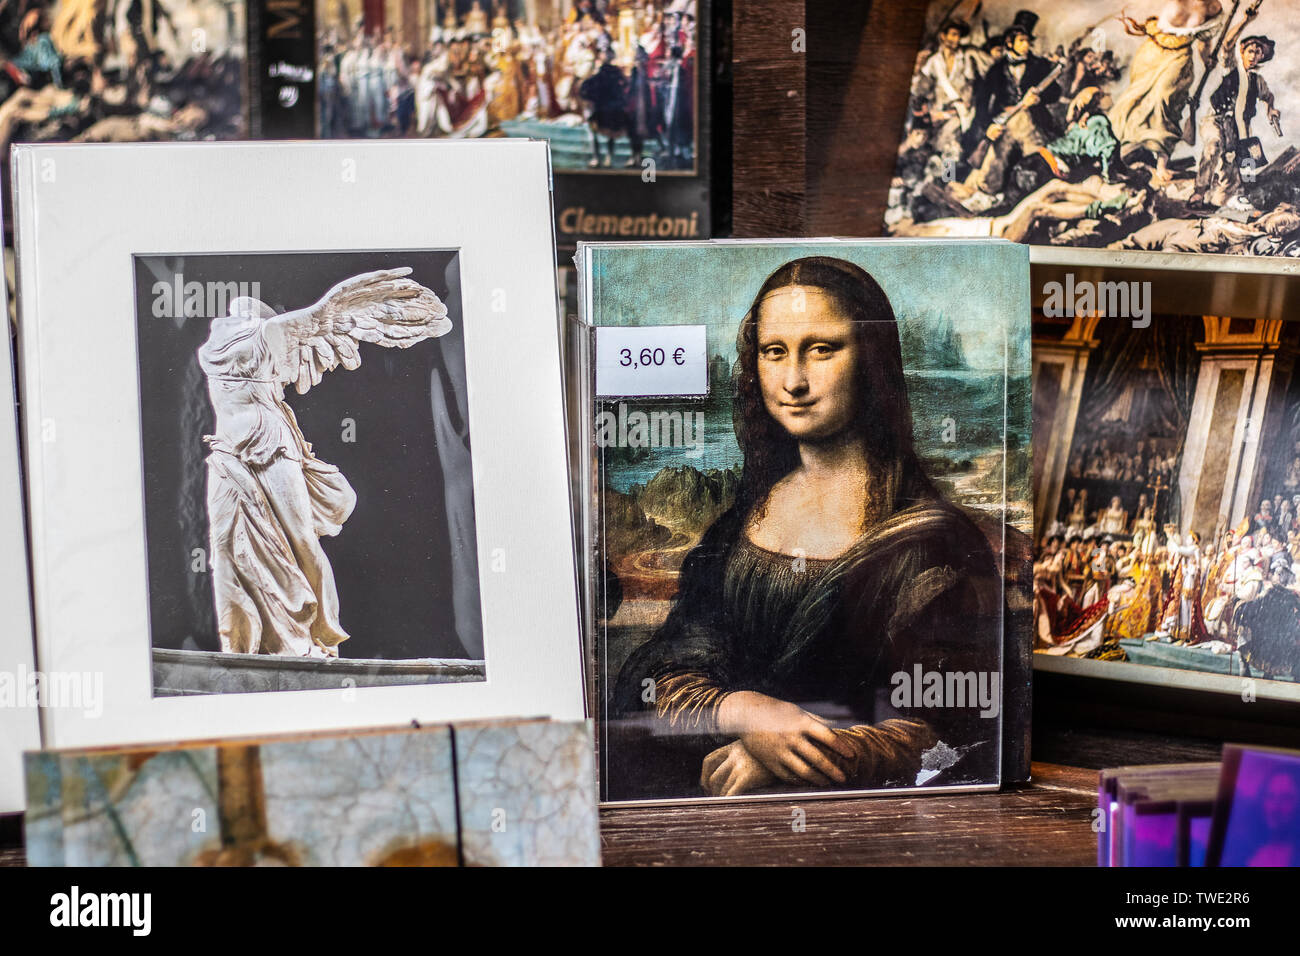 Paris, France, October 07, 2018: Louvre Museum, souvenirs for sale, tourist loot of famous painting Mona Lisa La Gioconda Leonardo da Vinci Stock Photo